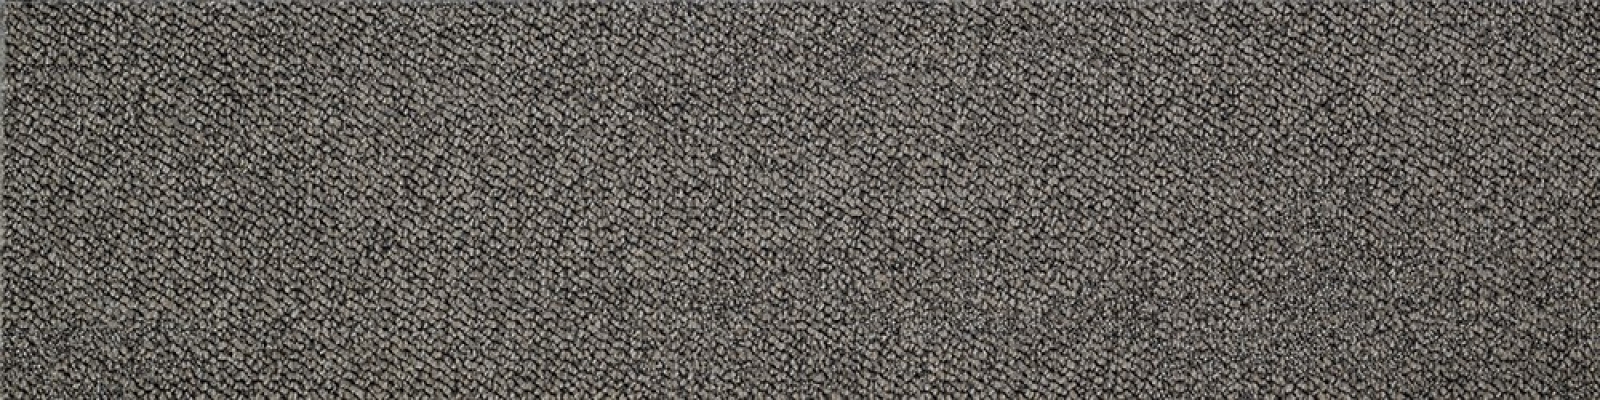 Carpet Tiles : Sense-75023